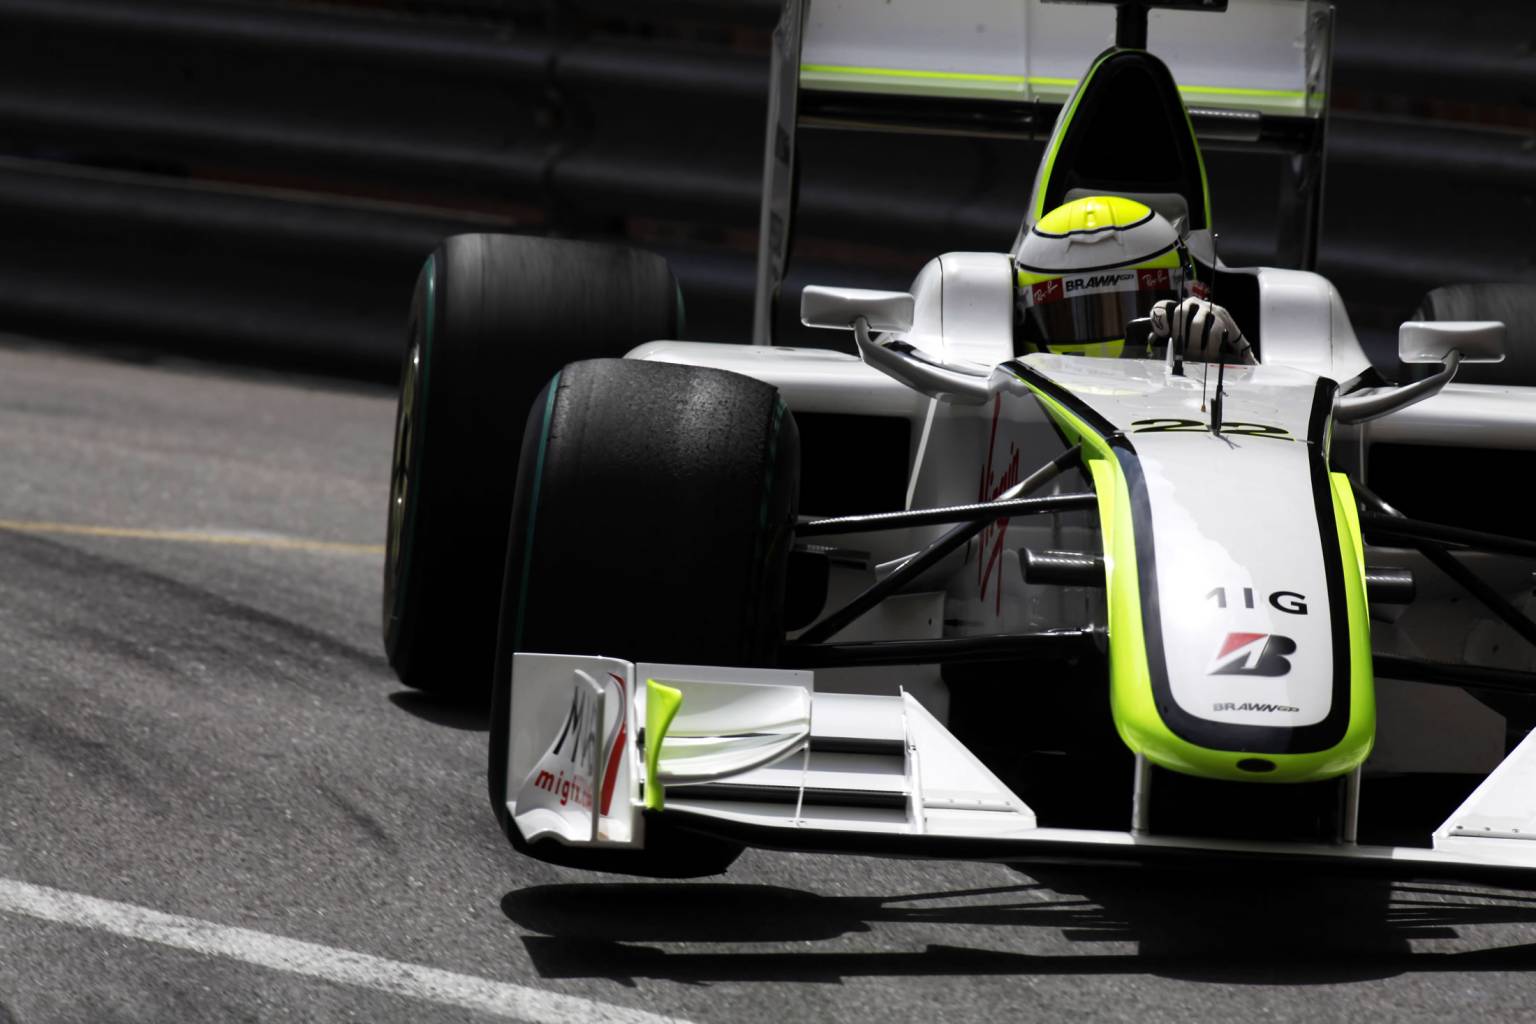 Wallpaper Monaco Grand Prix Of Marco S Formula